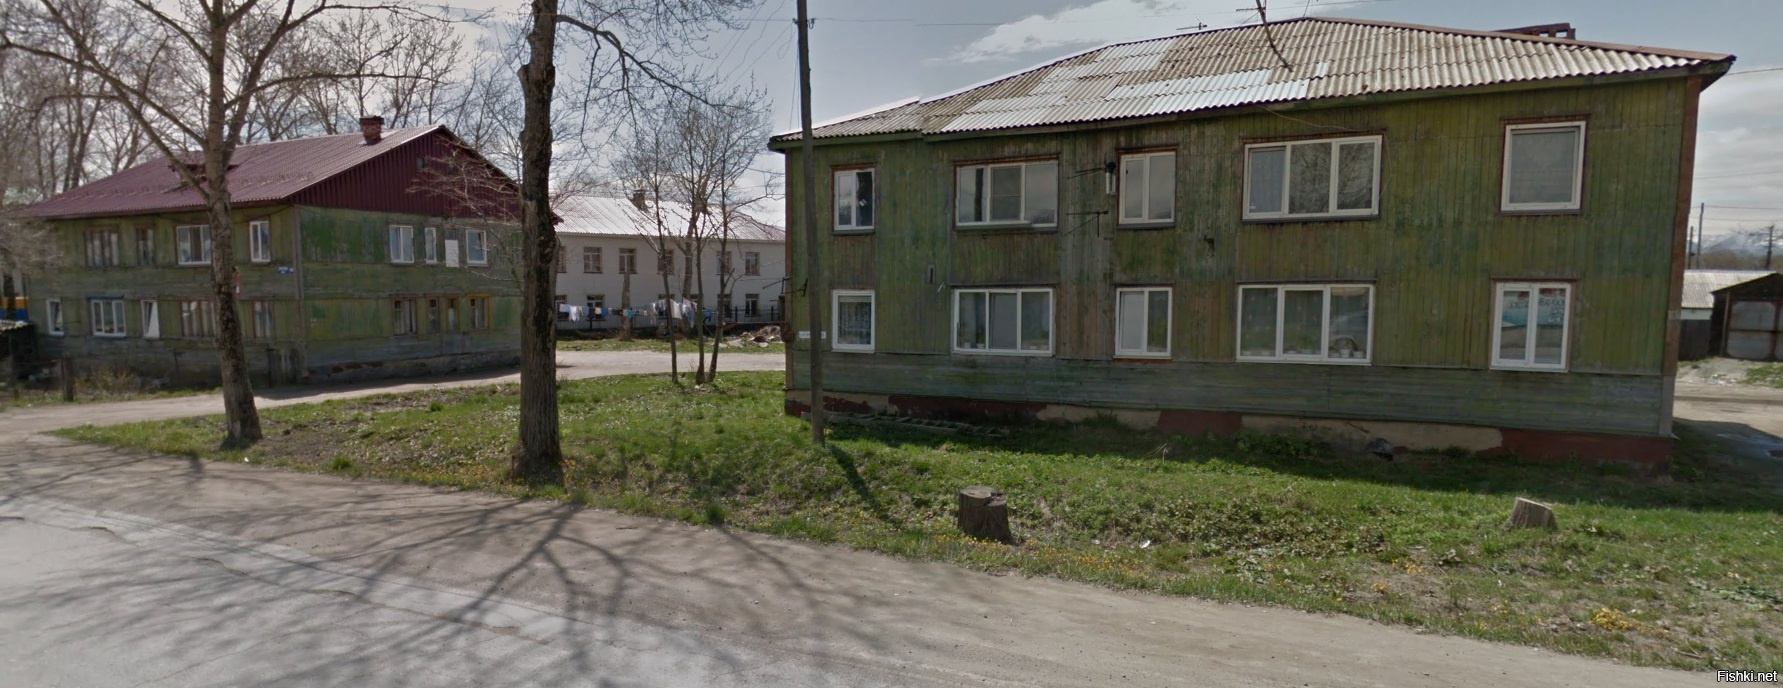 В Южно-Сахалинске очень много деревянных бараков. Да и по России в целом их хватает. Не удивлюсь если их всех начнут плёнкой затягивать, вместо того что бы сносить